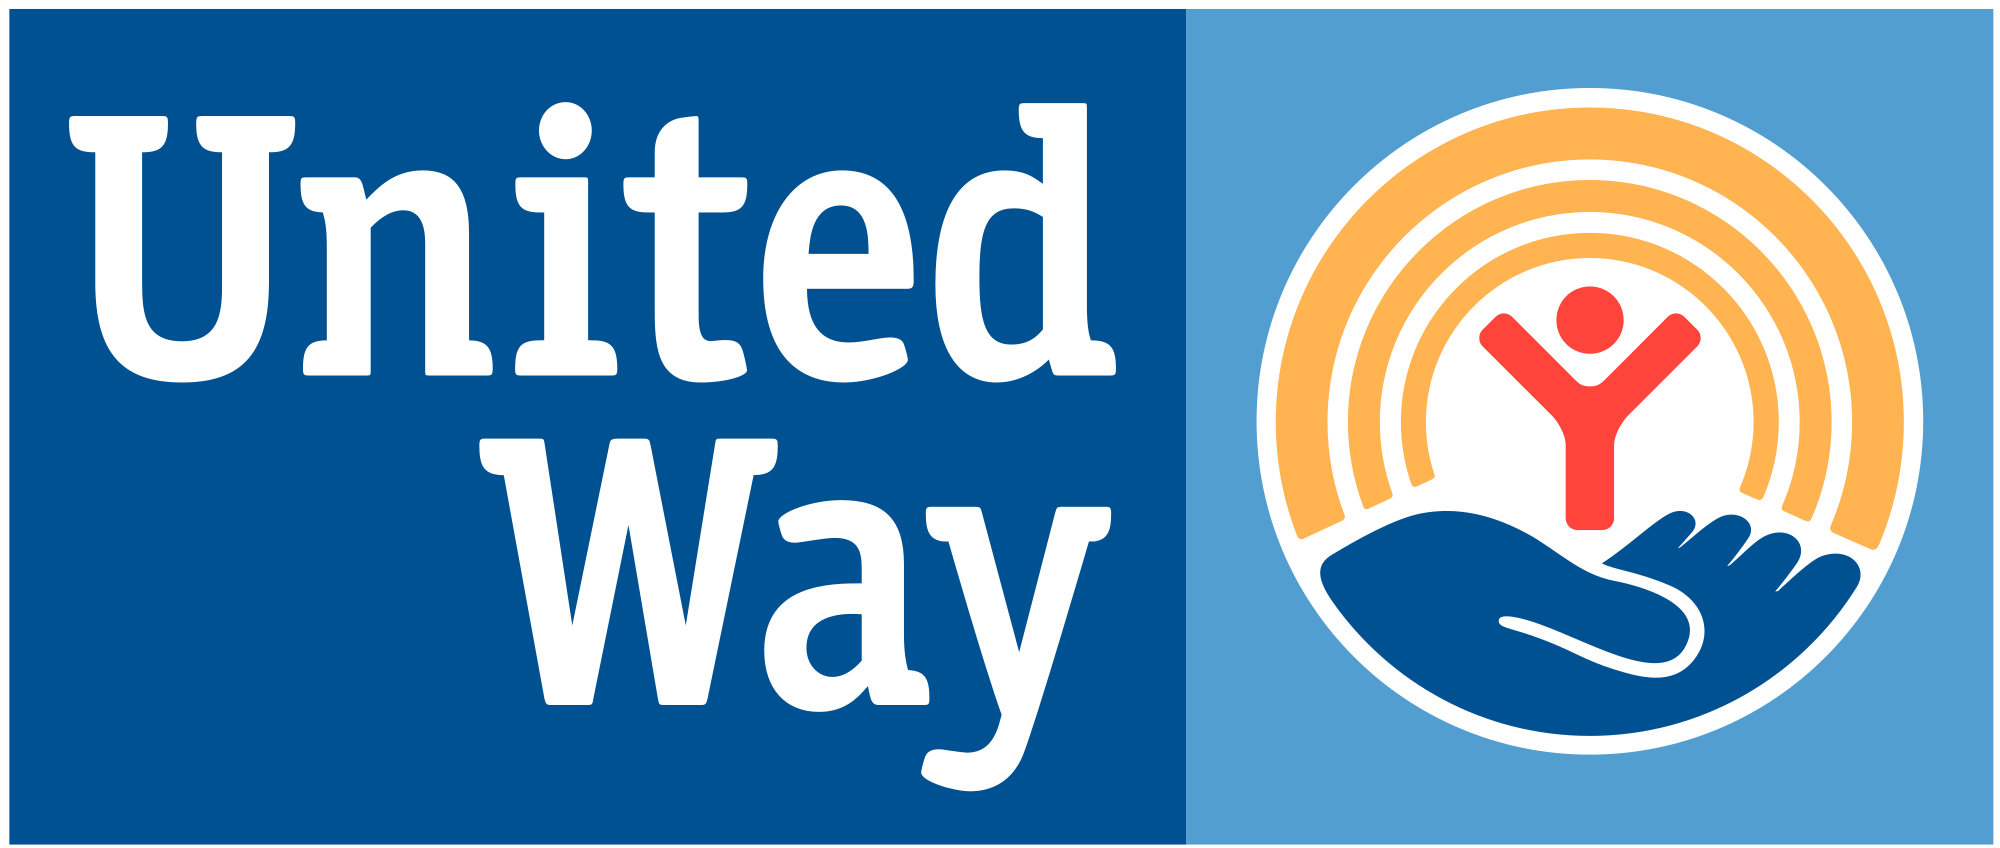 United Way Logo - United Way Worldwide logo.svg